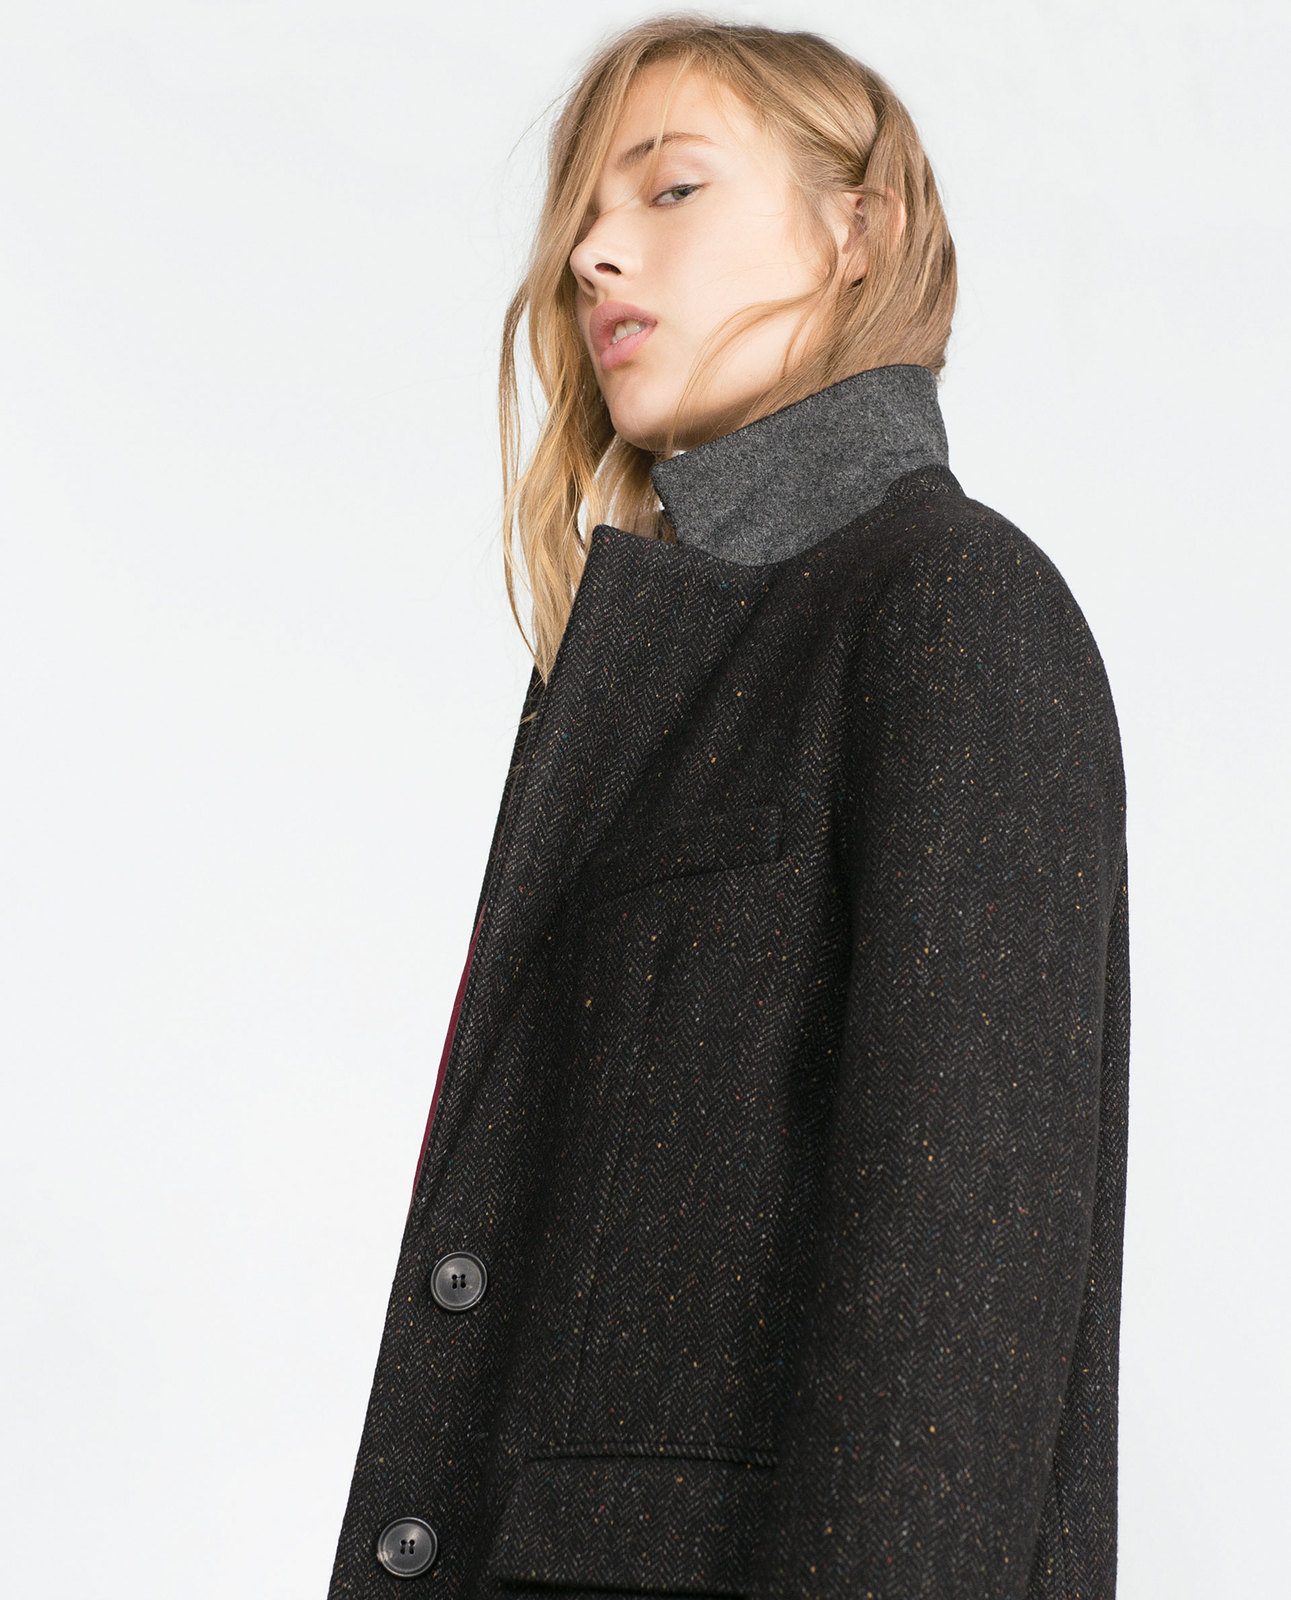 Zara egyenes szabású női kabát 2015 fotója